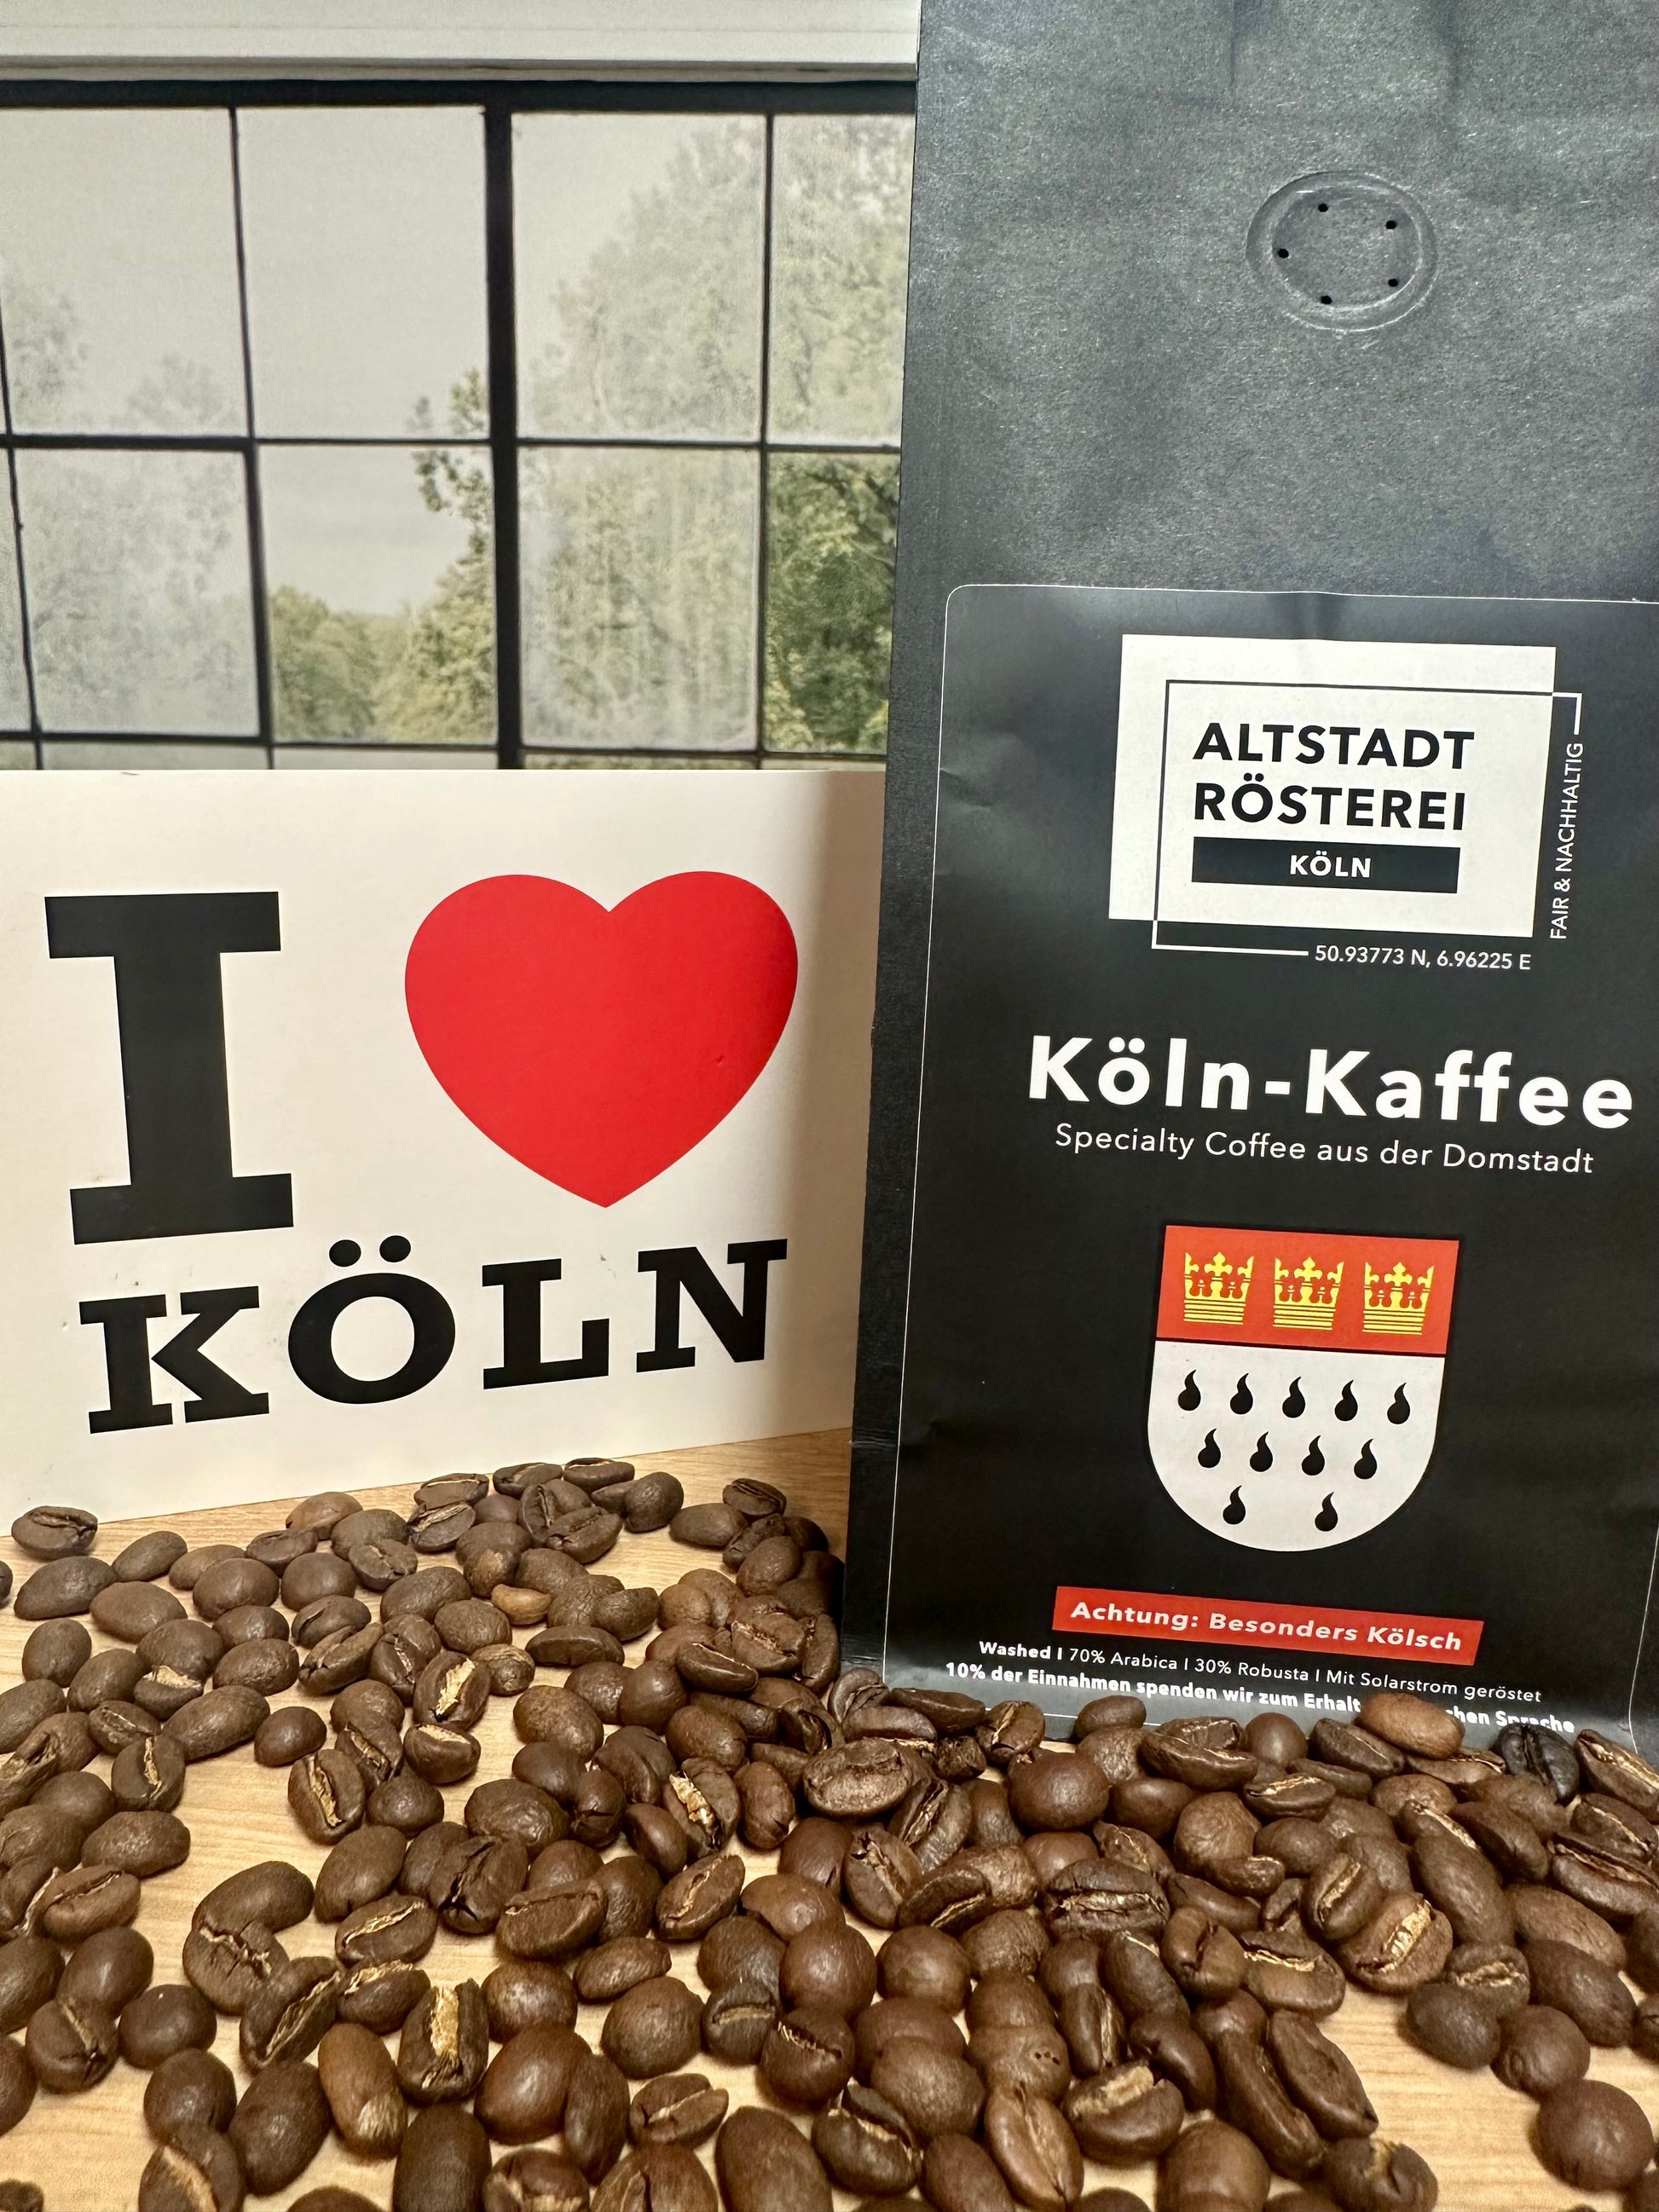  Eine Packung Köln-Kaffee von der Altstadt Rösterei Köln, umgeben von Kaffeebohnen. Daneben steht ein Schild mit der Aufschrift "I love Köln".